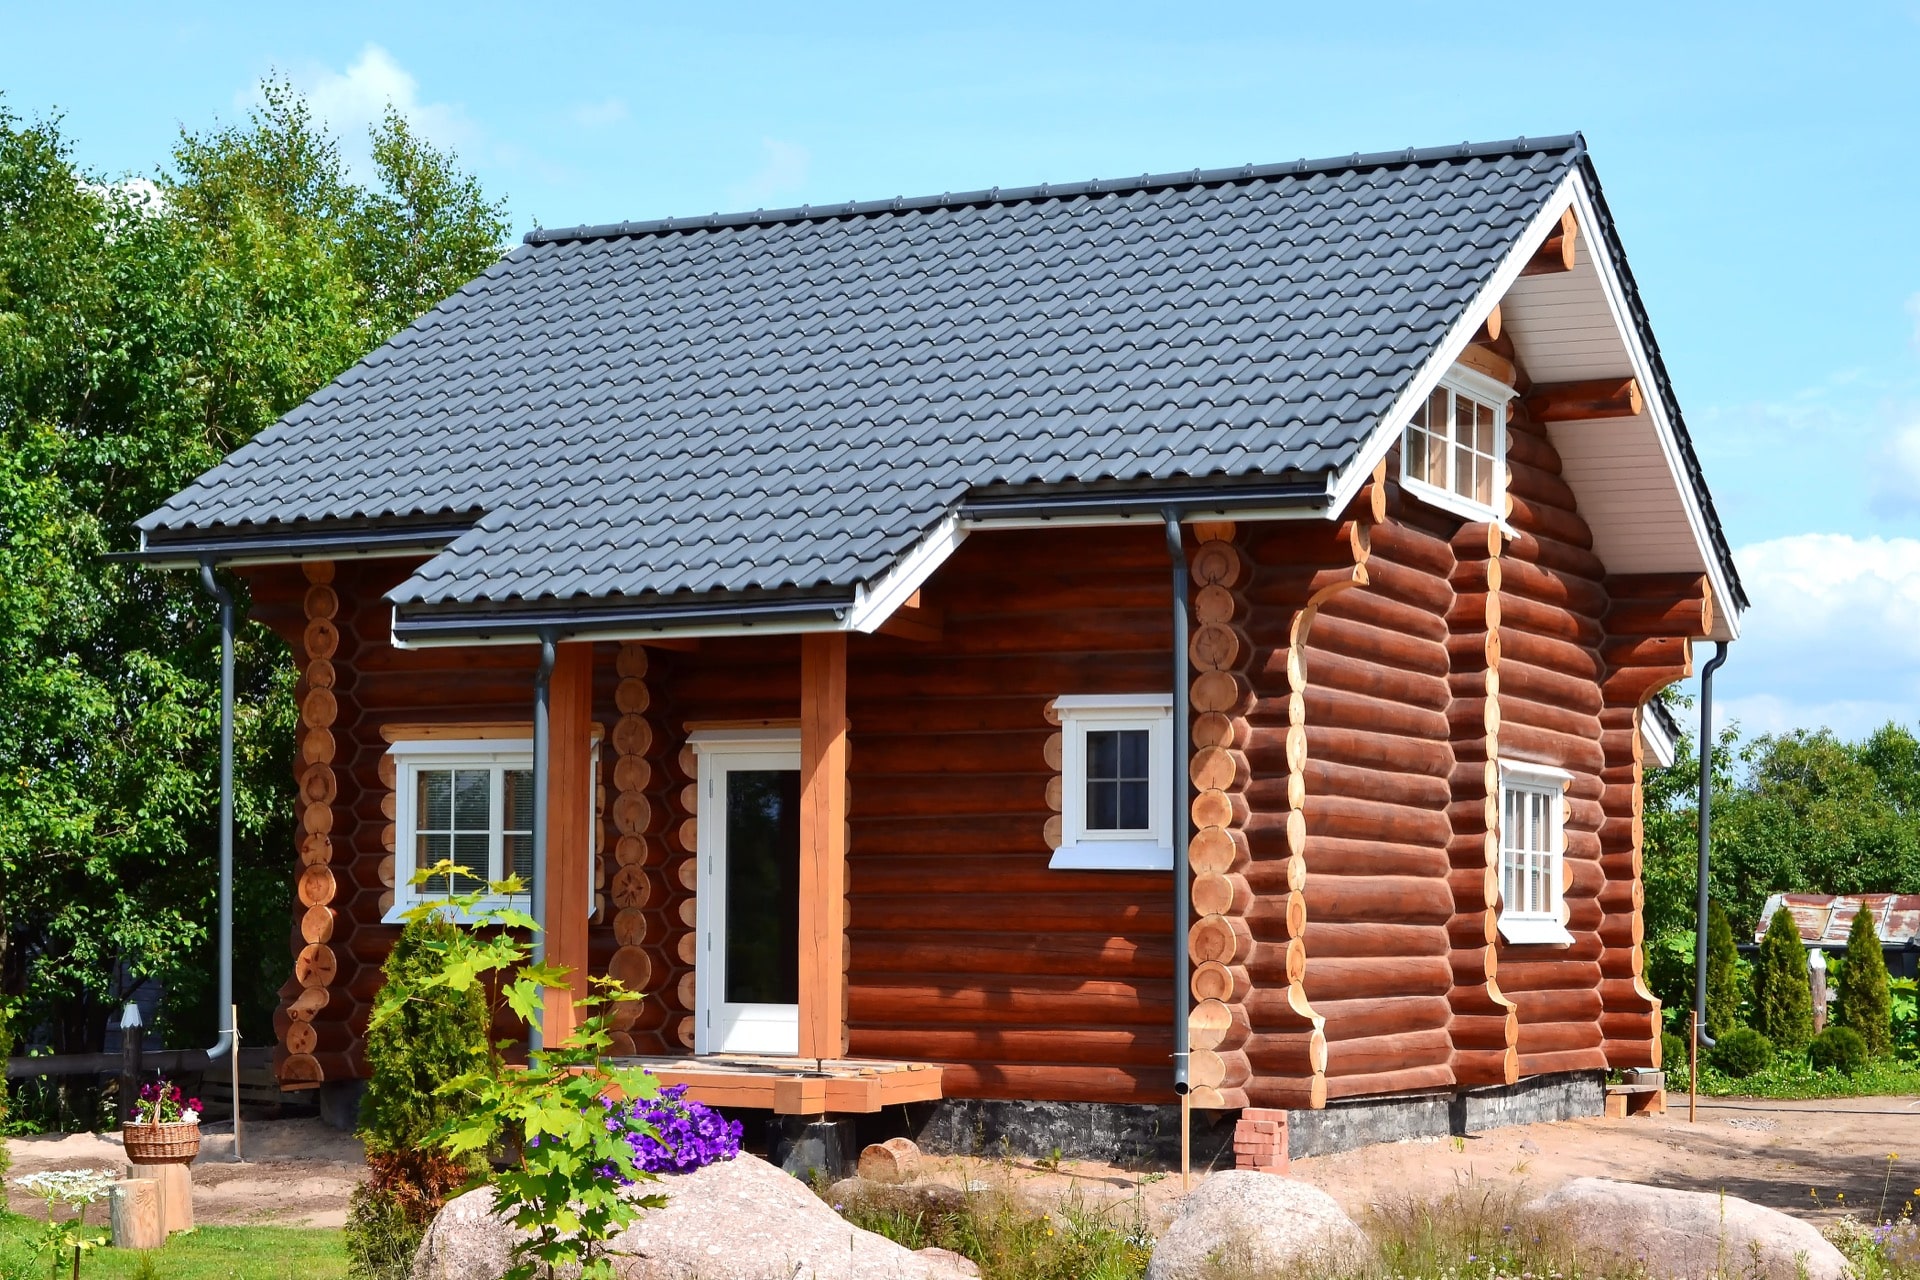 Фасад двухэтажного деревянного дома из рубленного бревна (бруса) 240-260 мм с крышей из металлочерепицы